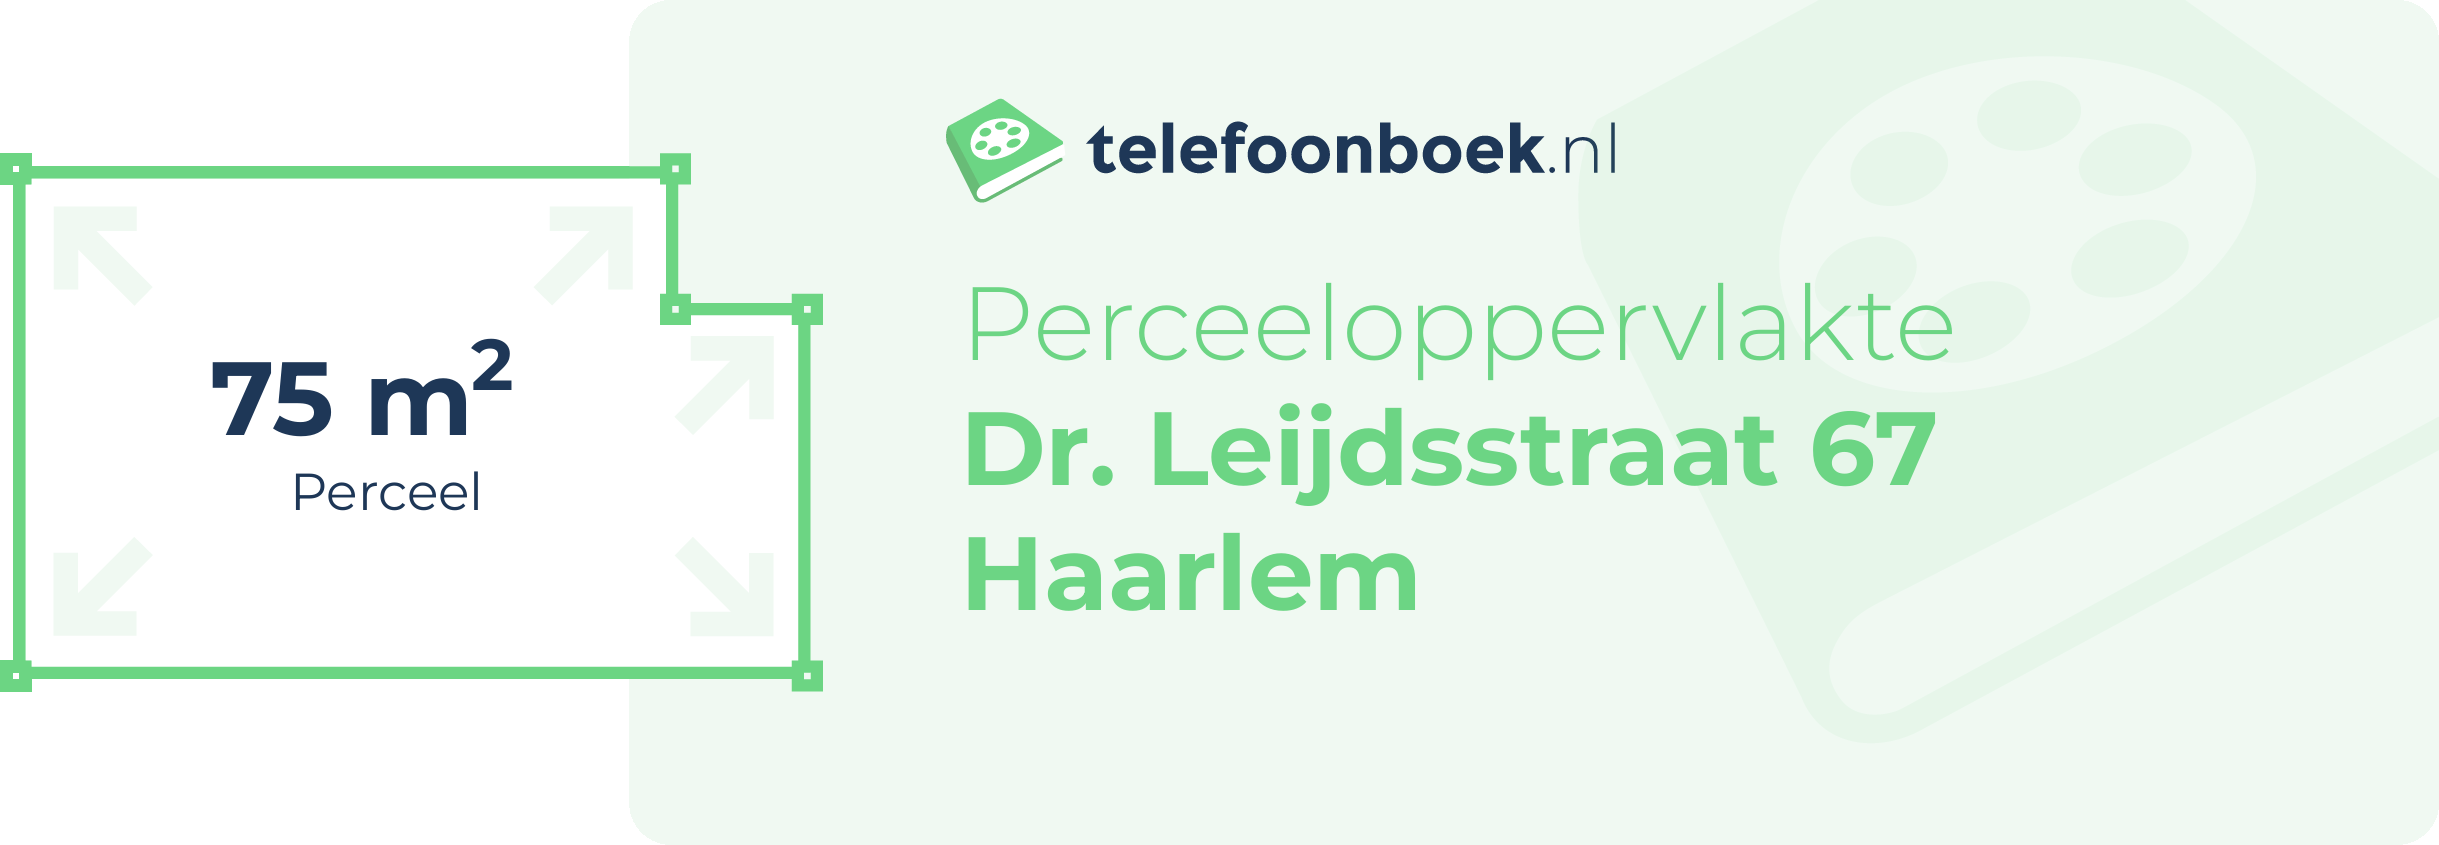 Perceeloppervlakte Dr. Leijdsstraat 67 Haarlem